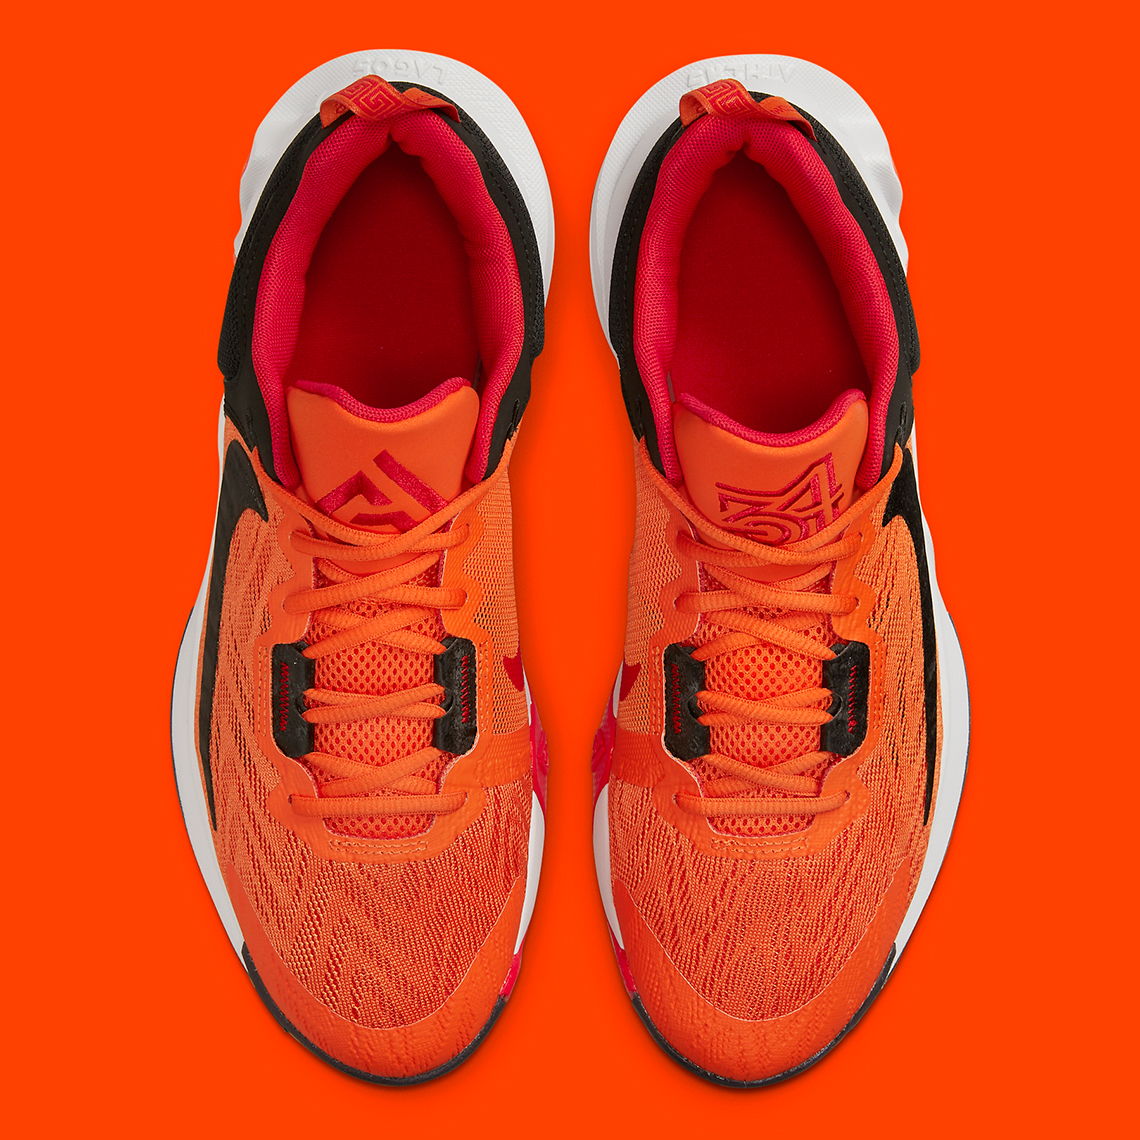 Nike buty Giannis Immortalilty 2 Orange Black Release Date 4